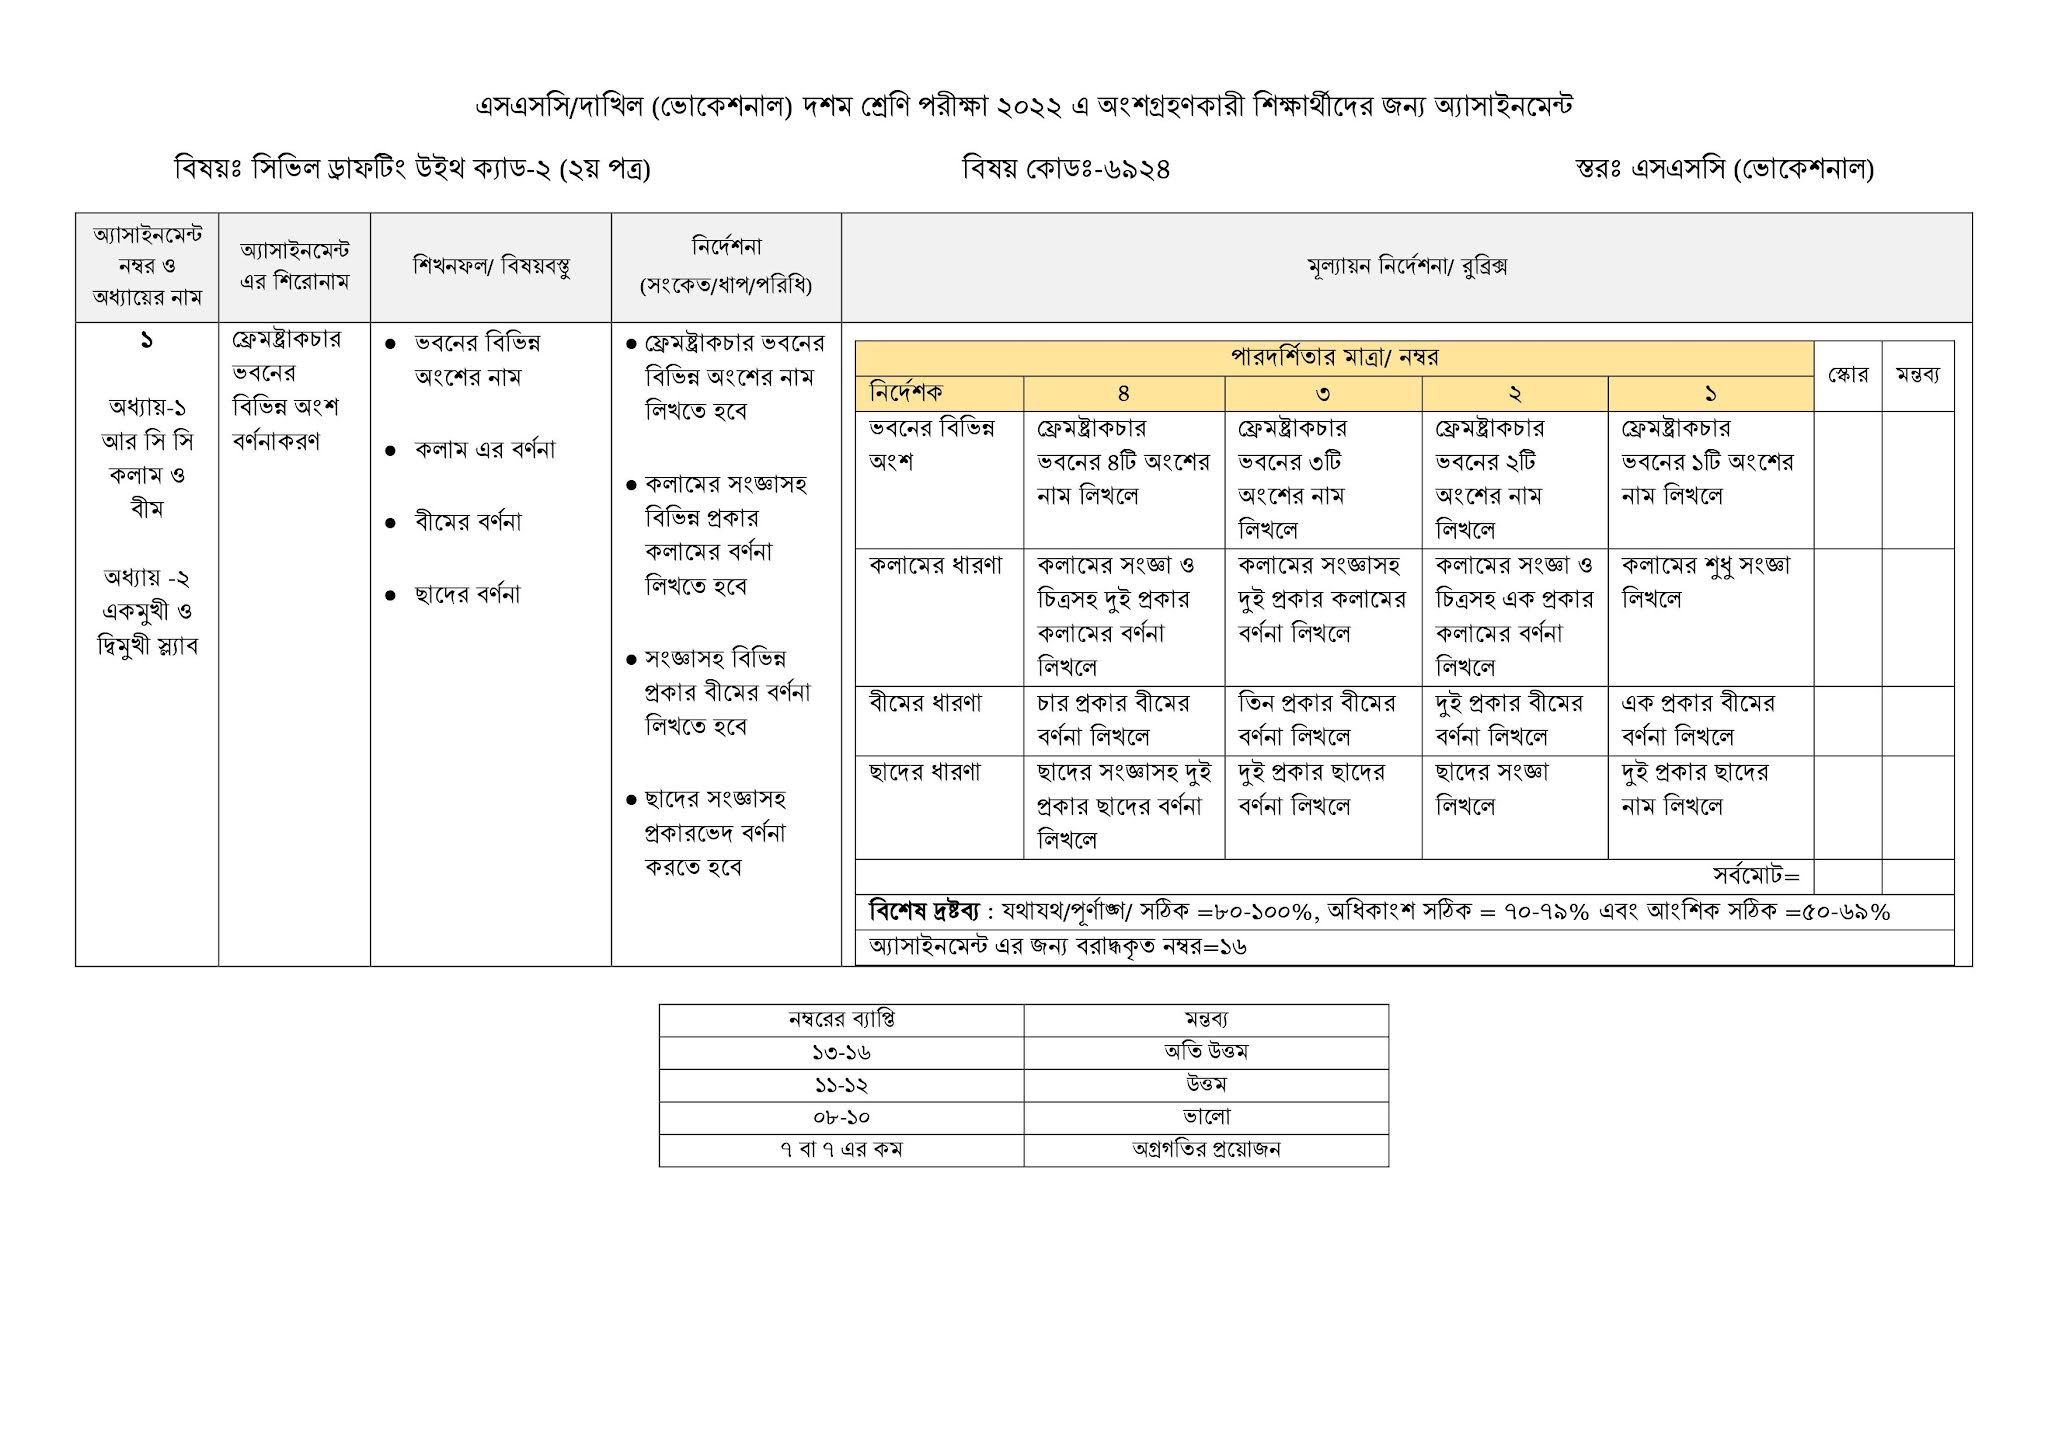 দাখিল ভোকেশনাল ৩য় সপ্তাহের এসাইনমেন্ট ২০২২ | Dakhil vocational 3rd week assignment question and answer 2022